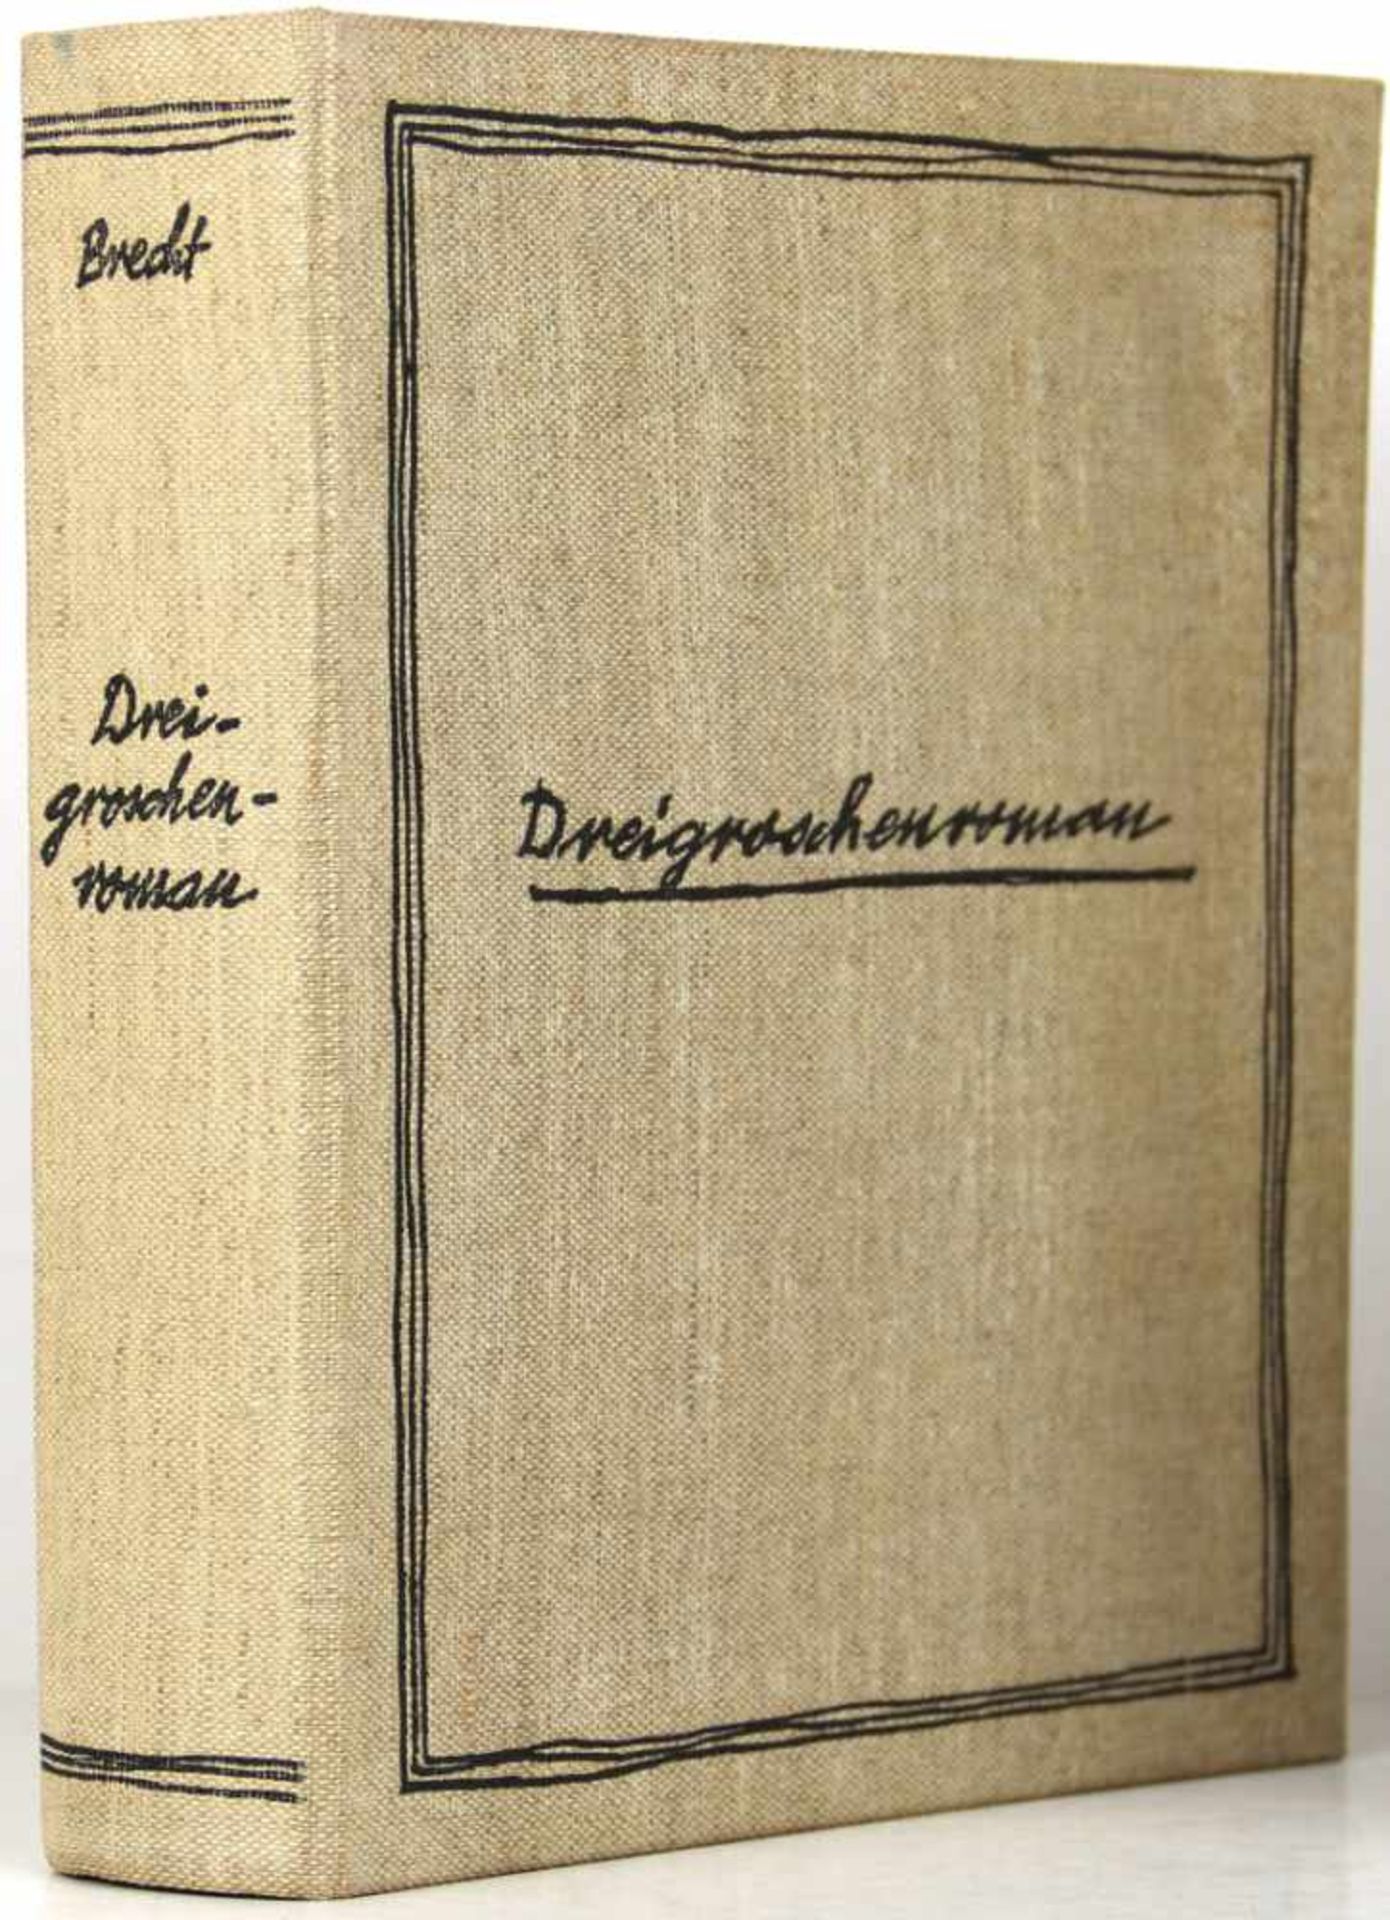 Brecht, Bertolt:Dreigroschenroman. Amsterdam, Allert de Lange 1934. 492 S., 2 nn. Bl. 18,5 x 15,5